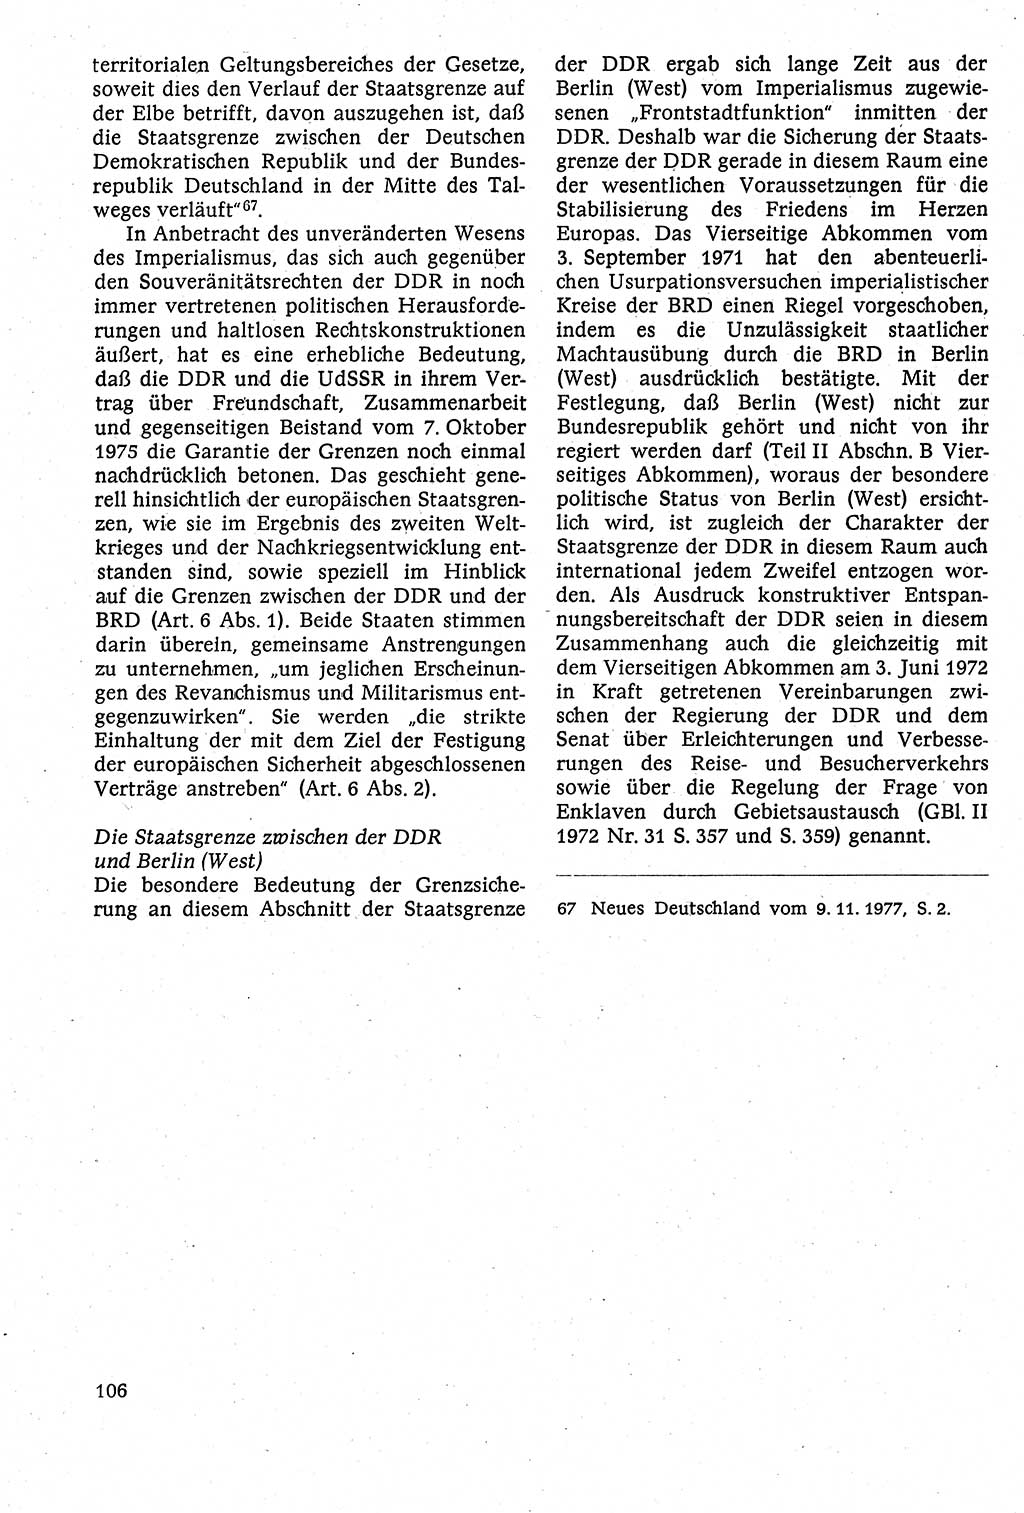 Staatsrecht der DDR [Deutsche Demokratische Republik (DDR)], Lehrbuch 1984, Seite 106 (St.-R. DDR Lb. 1984, S. 106)